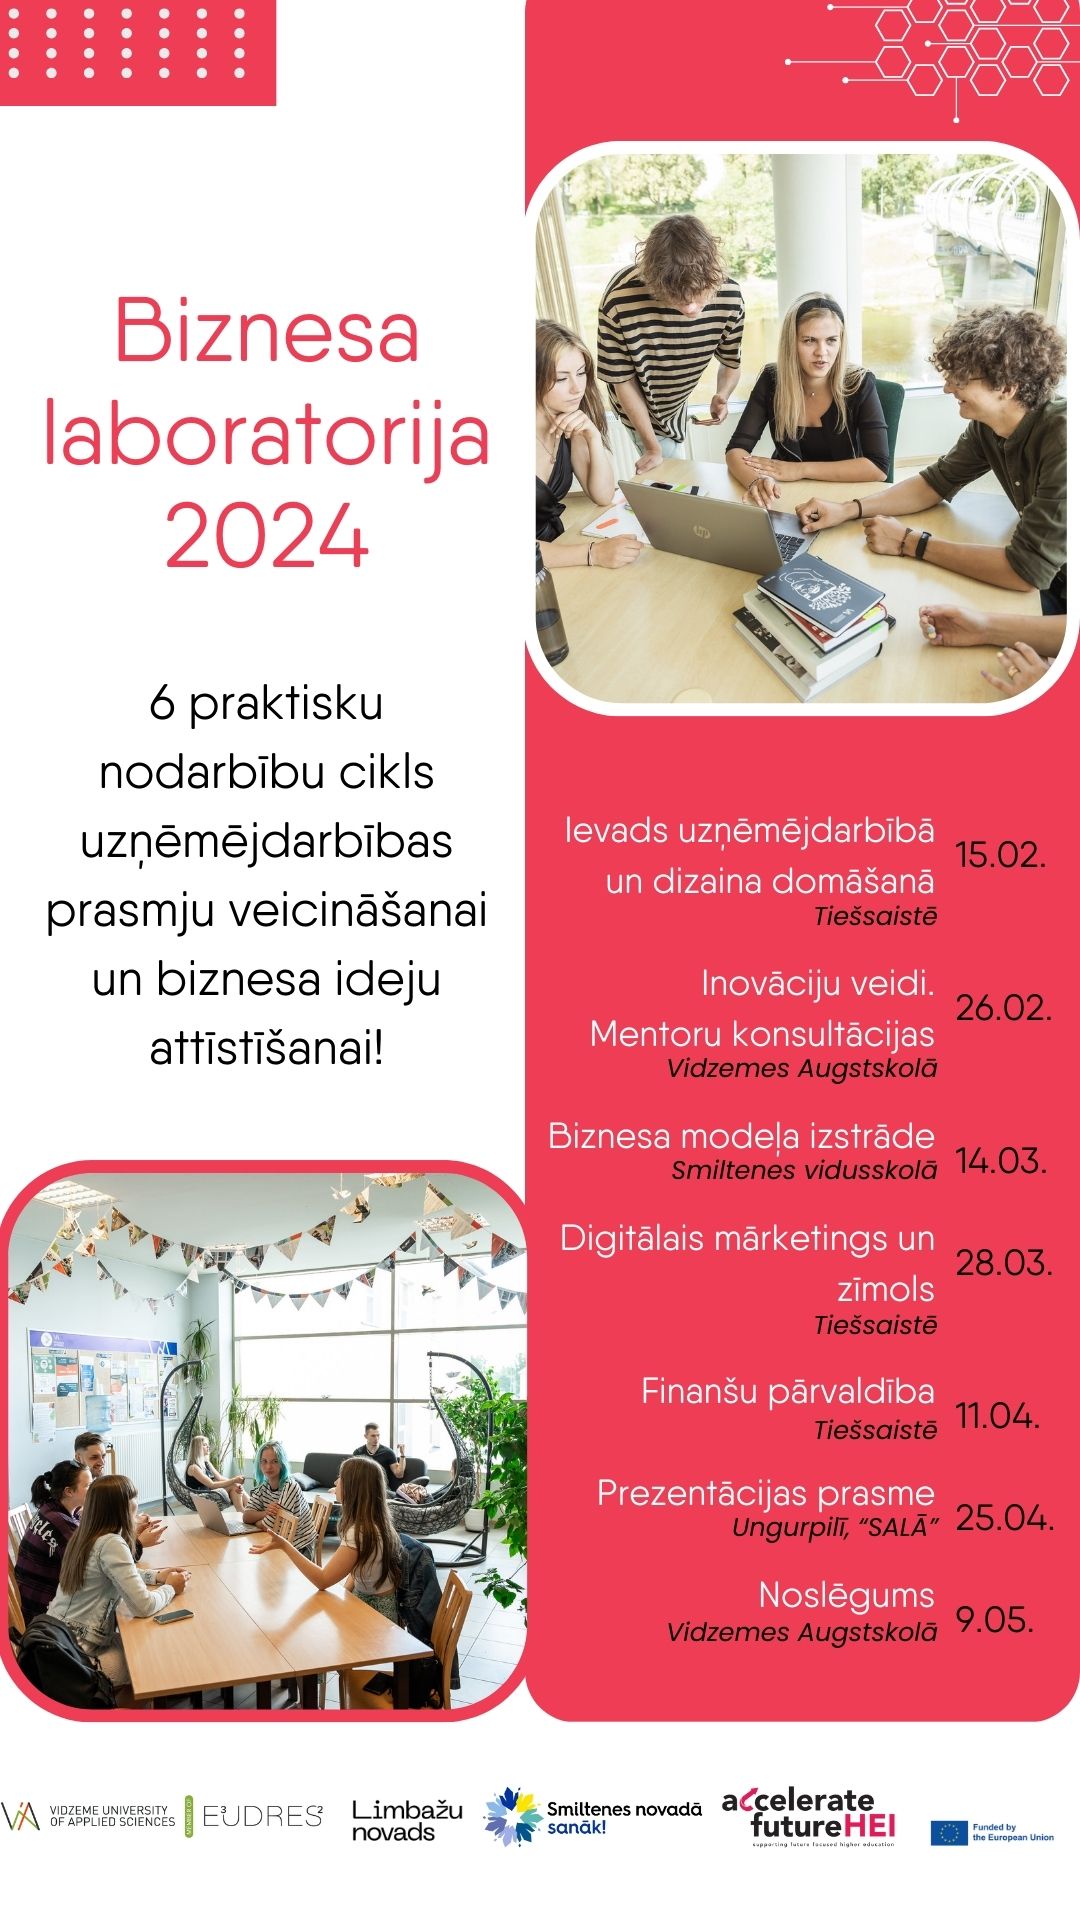 Biznesa laboratorija Poster (3)